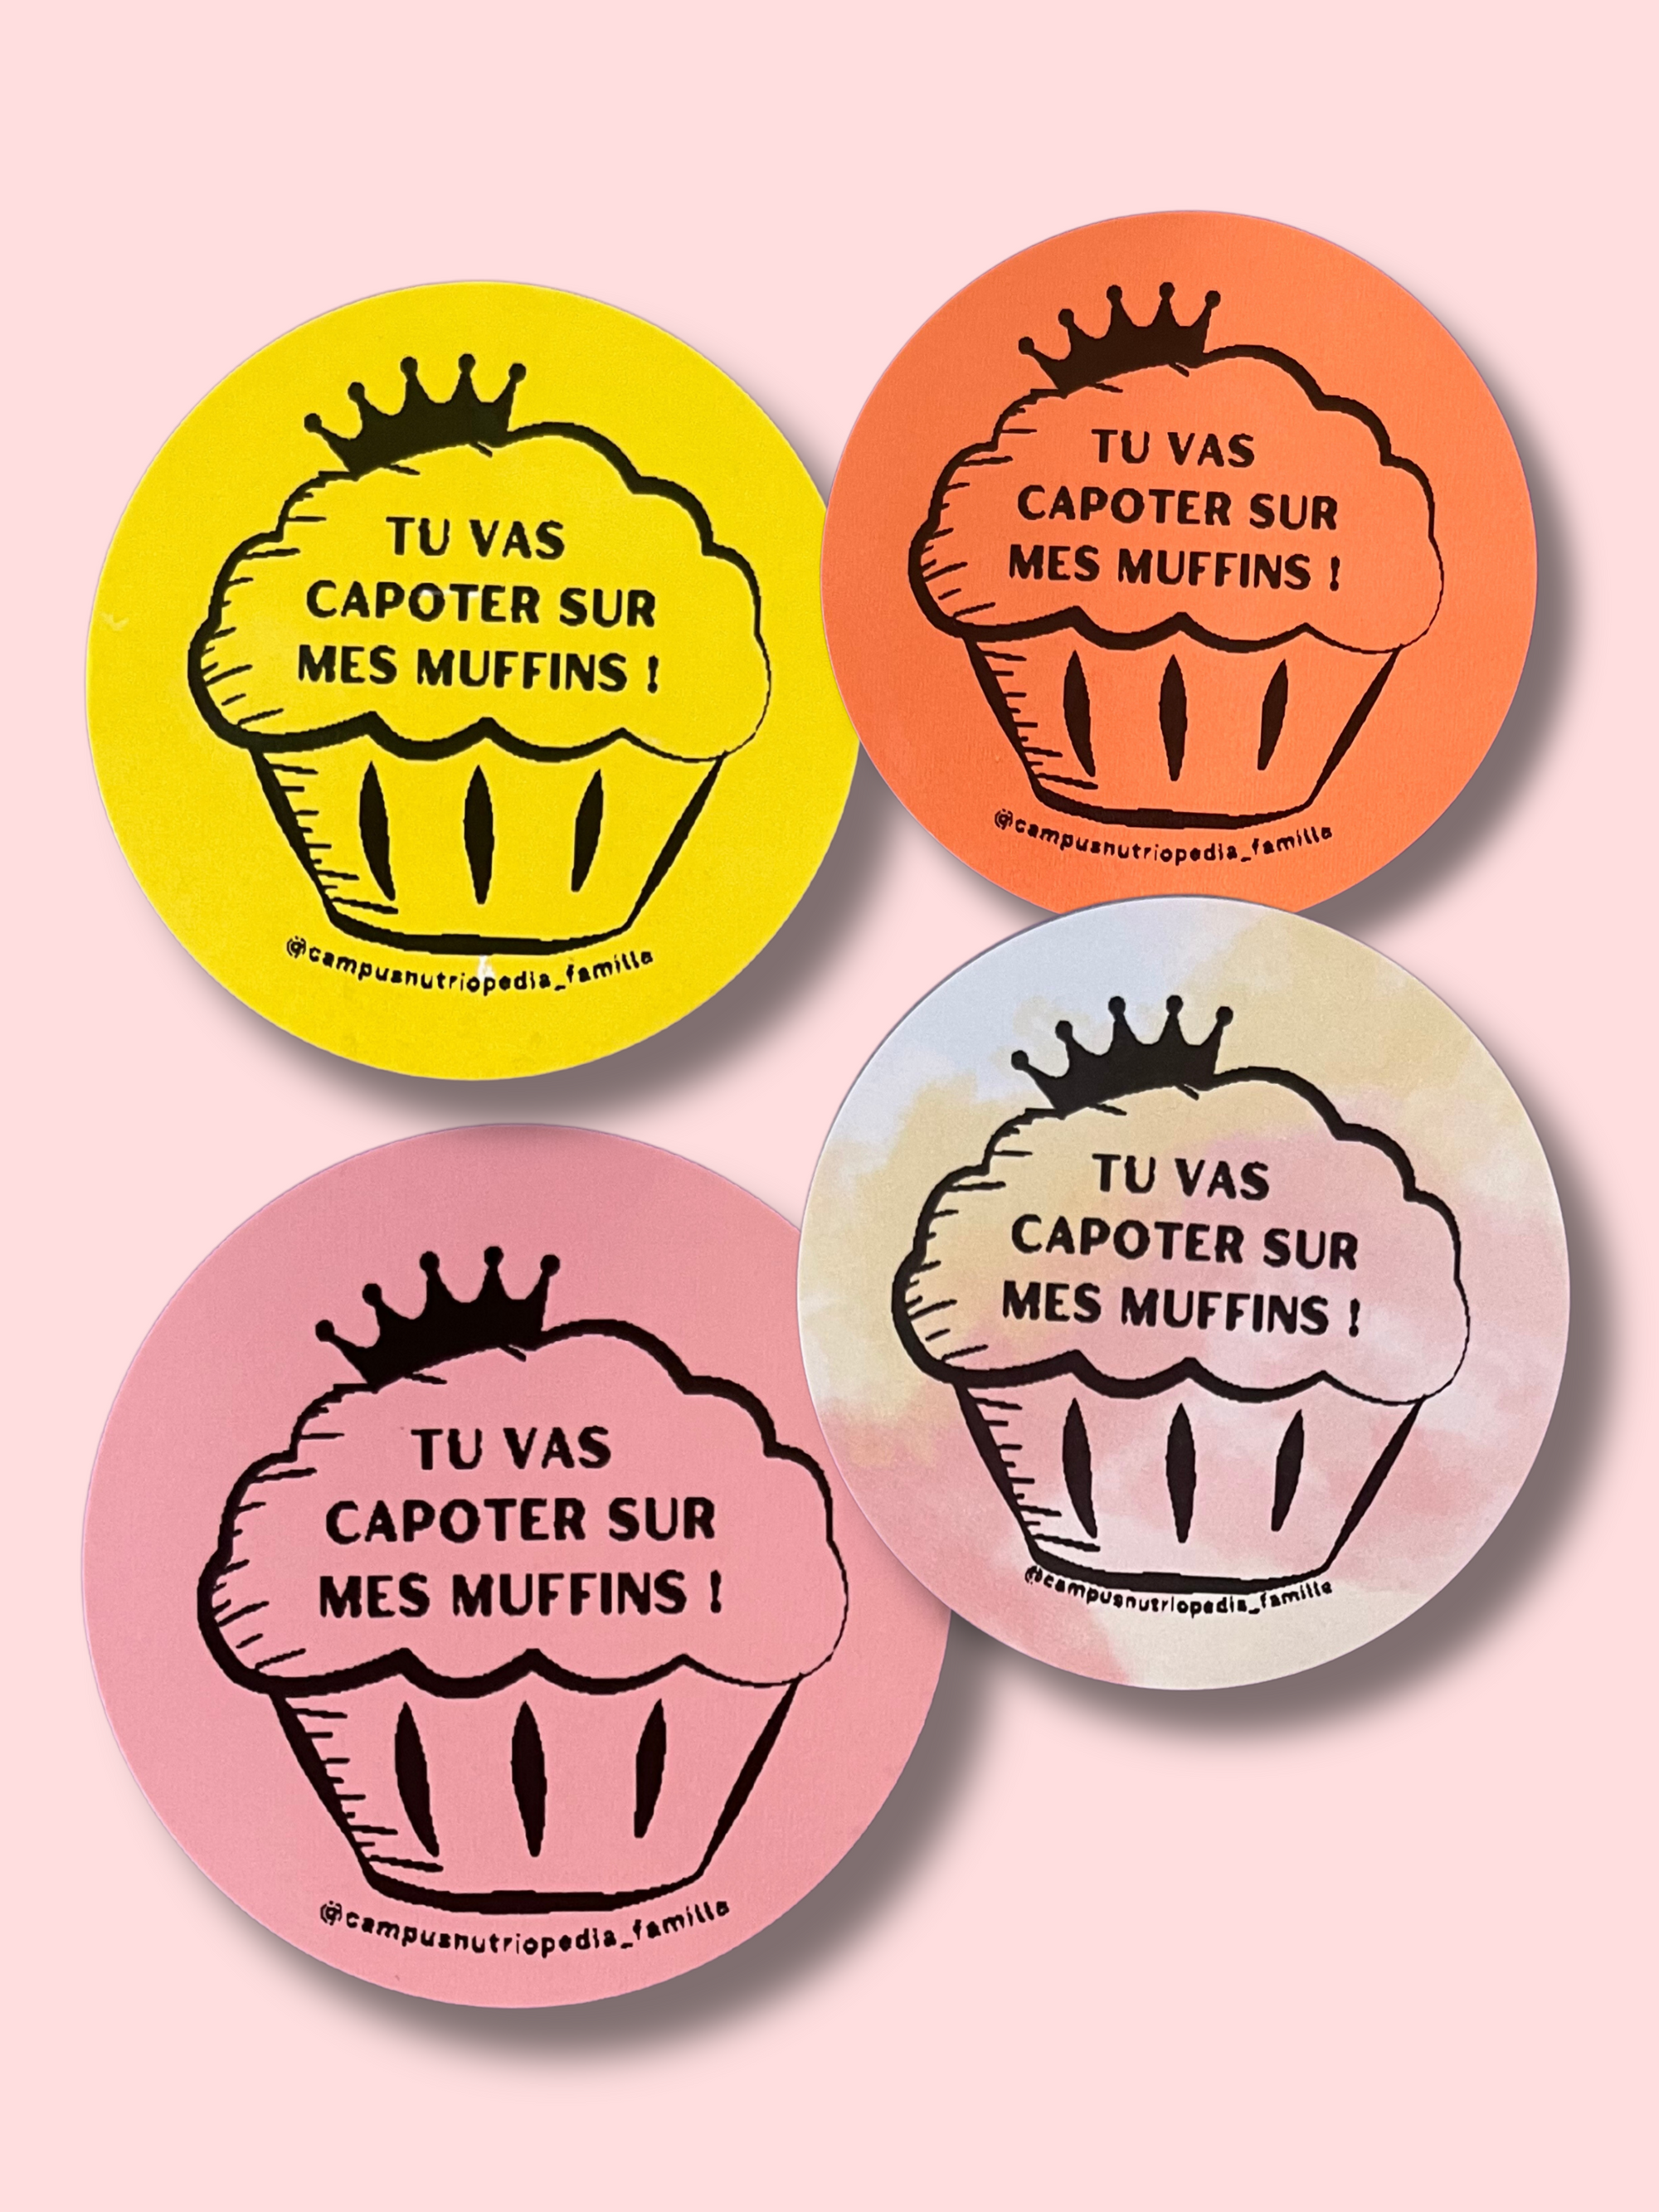 Tu vas capoter sur mes muffins! - Autocollants ludiques pour cadeaux gourmands, imprimés au Québec